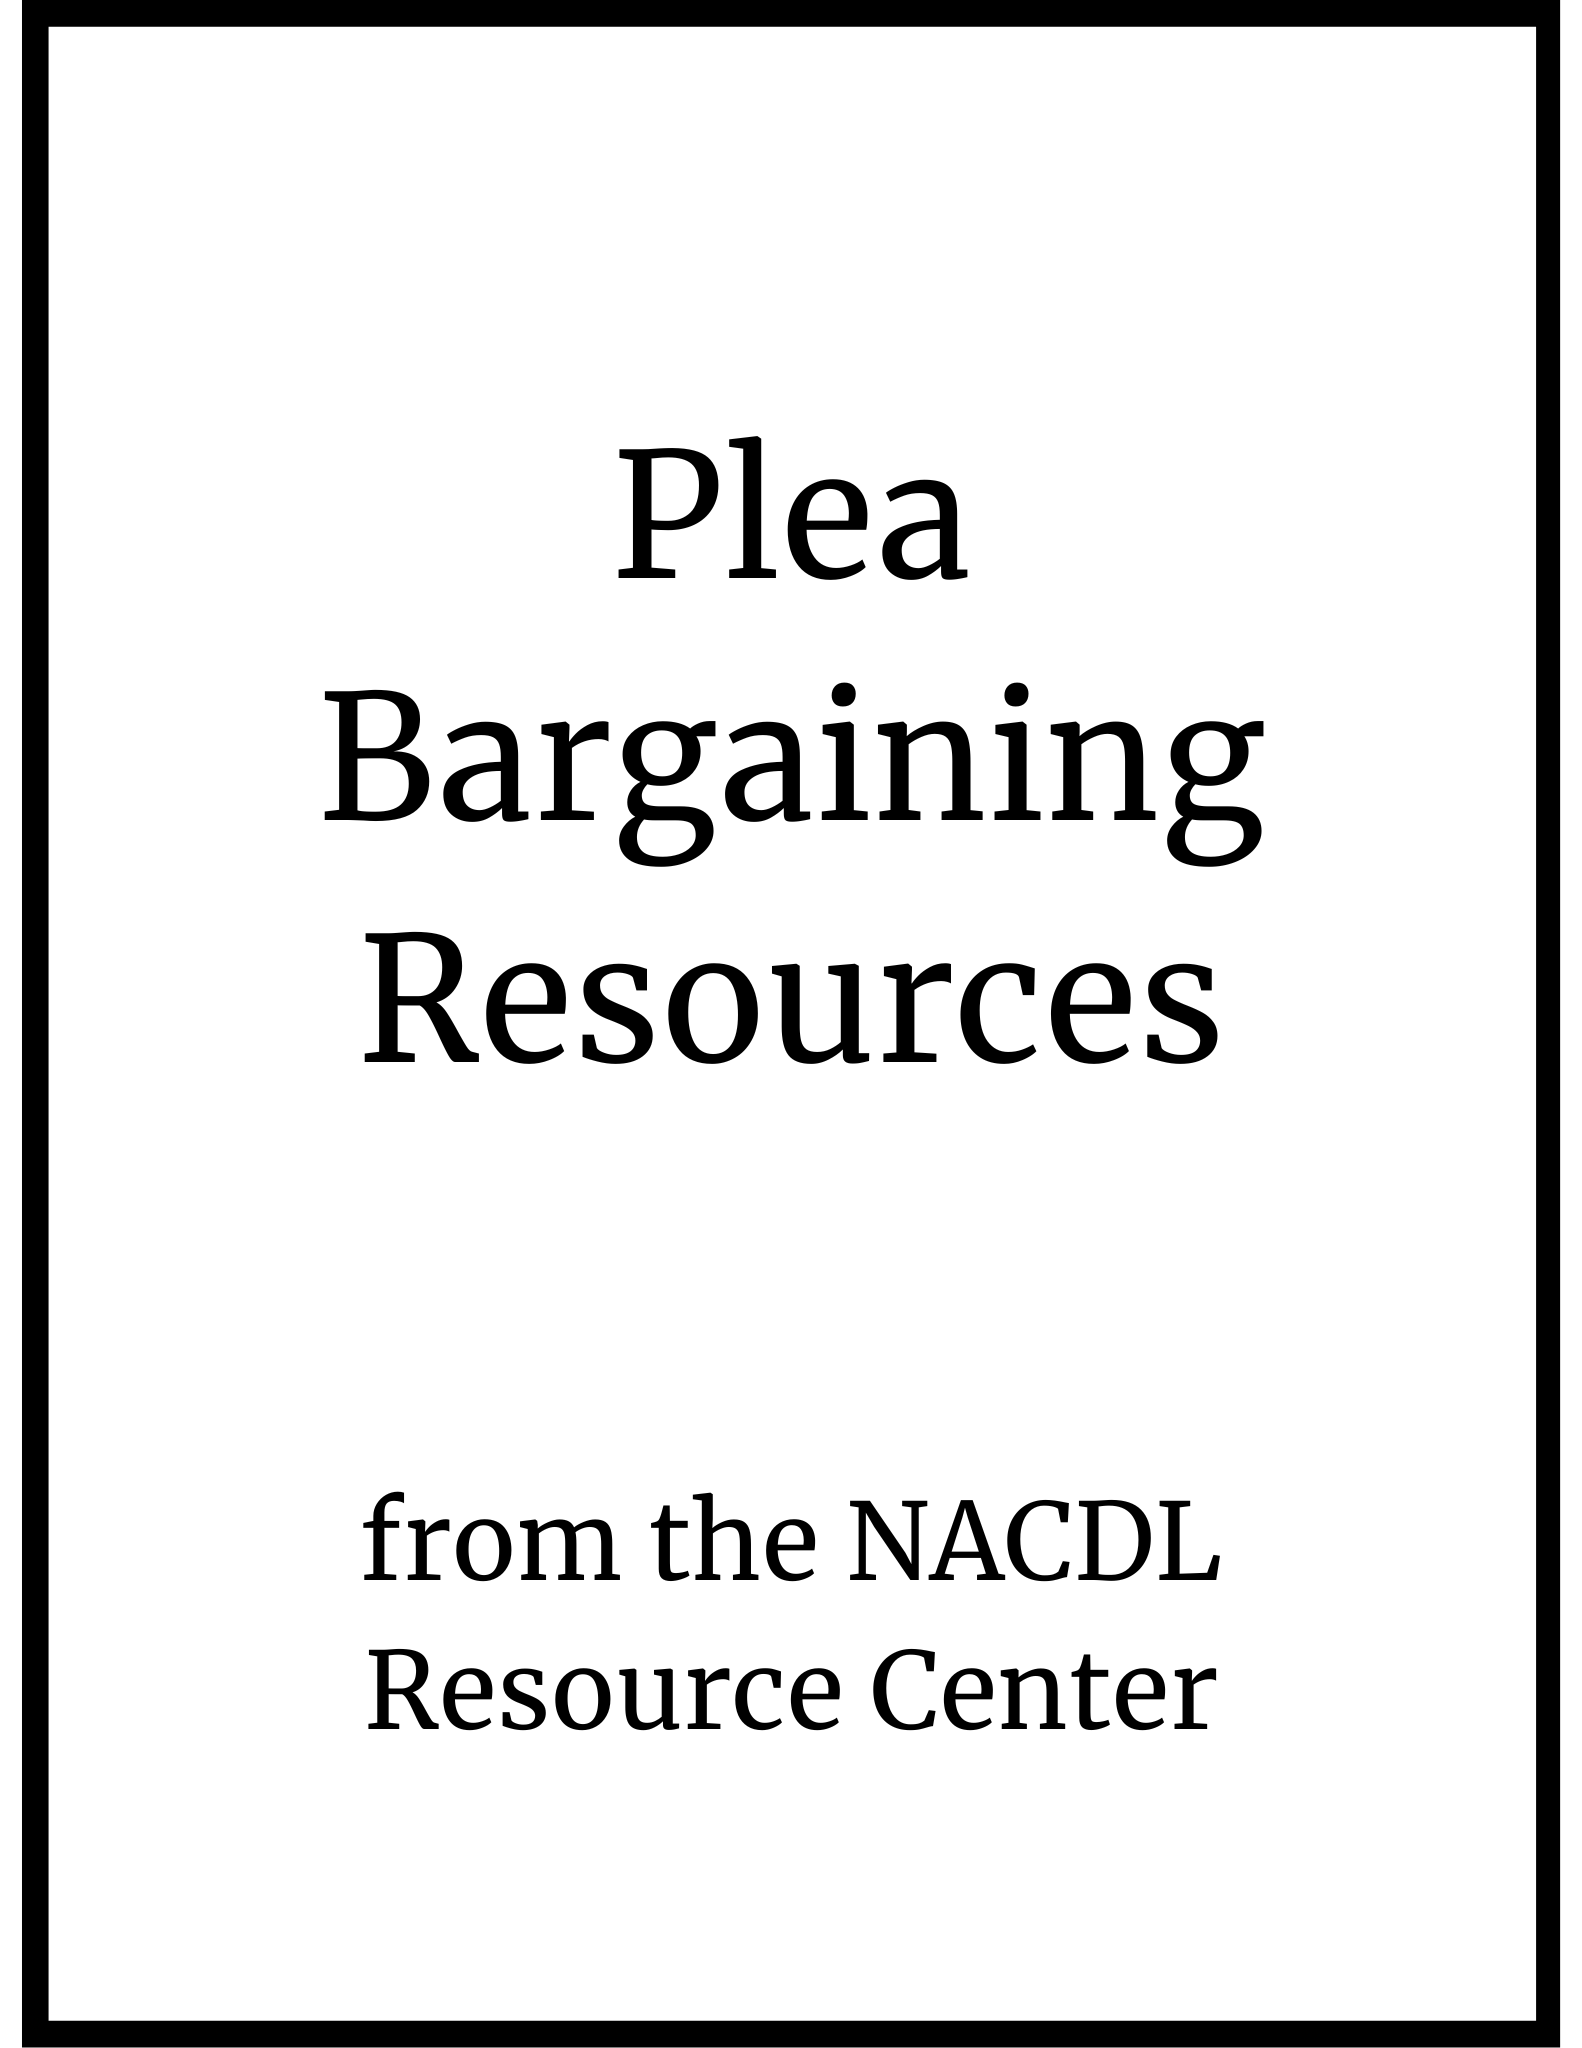 Plea bargaining resources